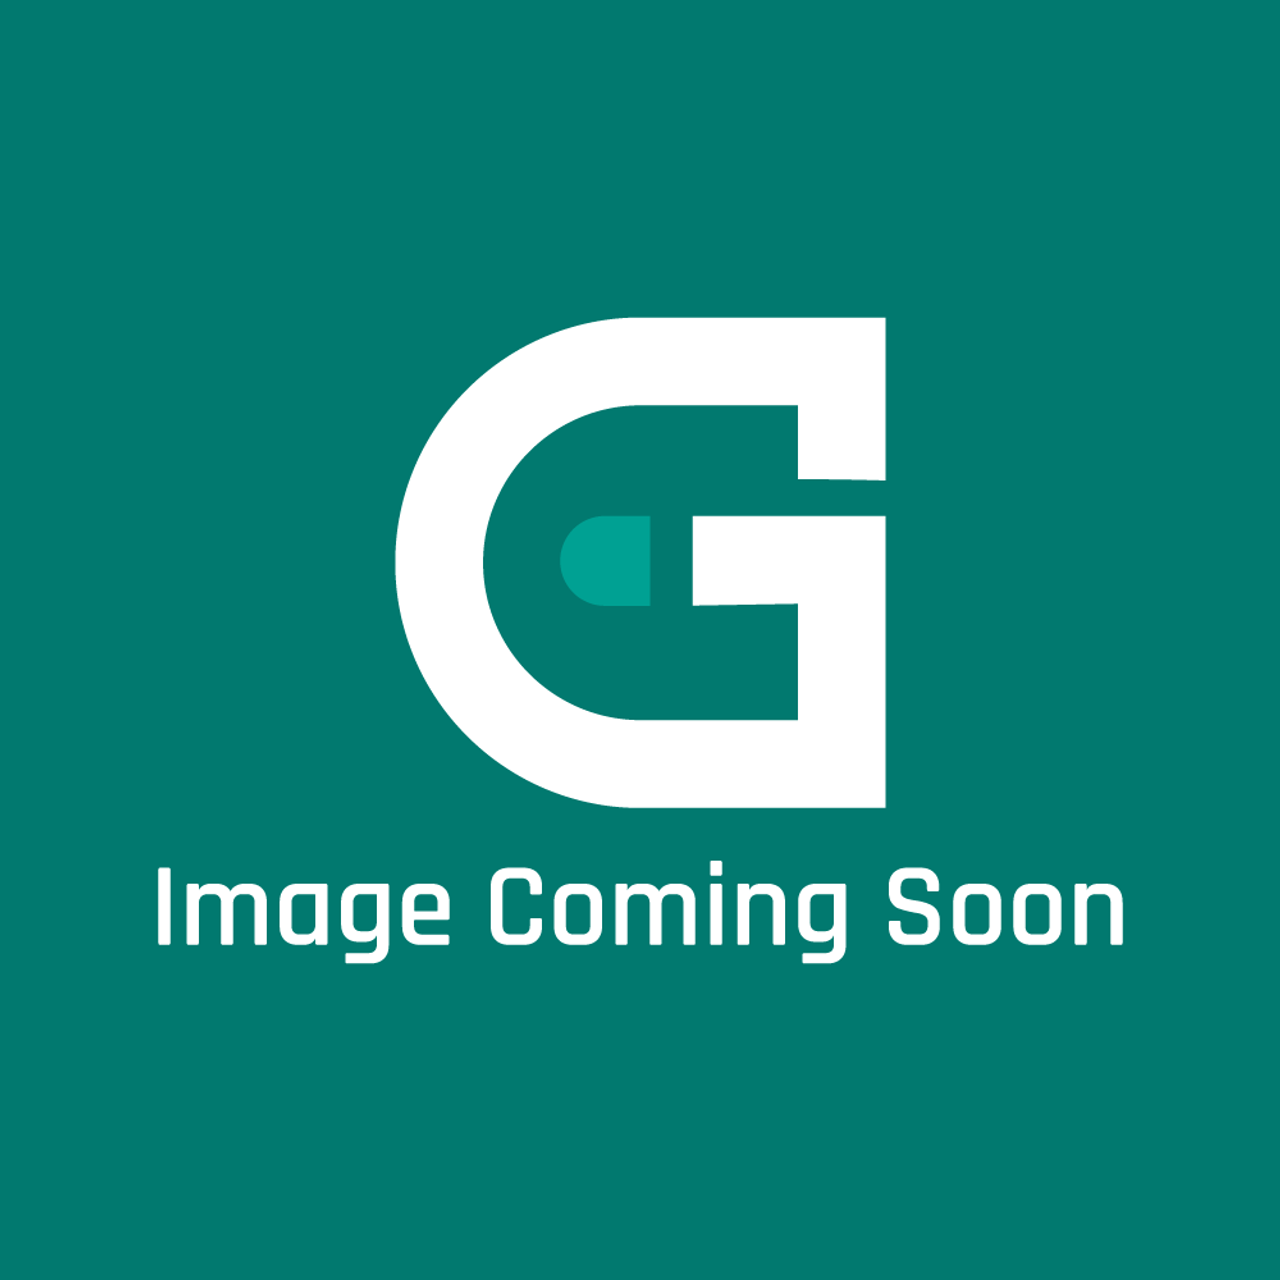 Garland 1859404 - Grill Plate Bayonet Adap Tor - Image Coming Soon!